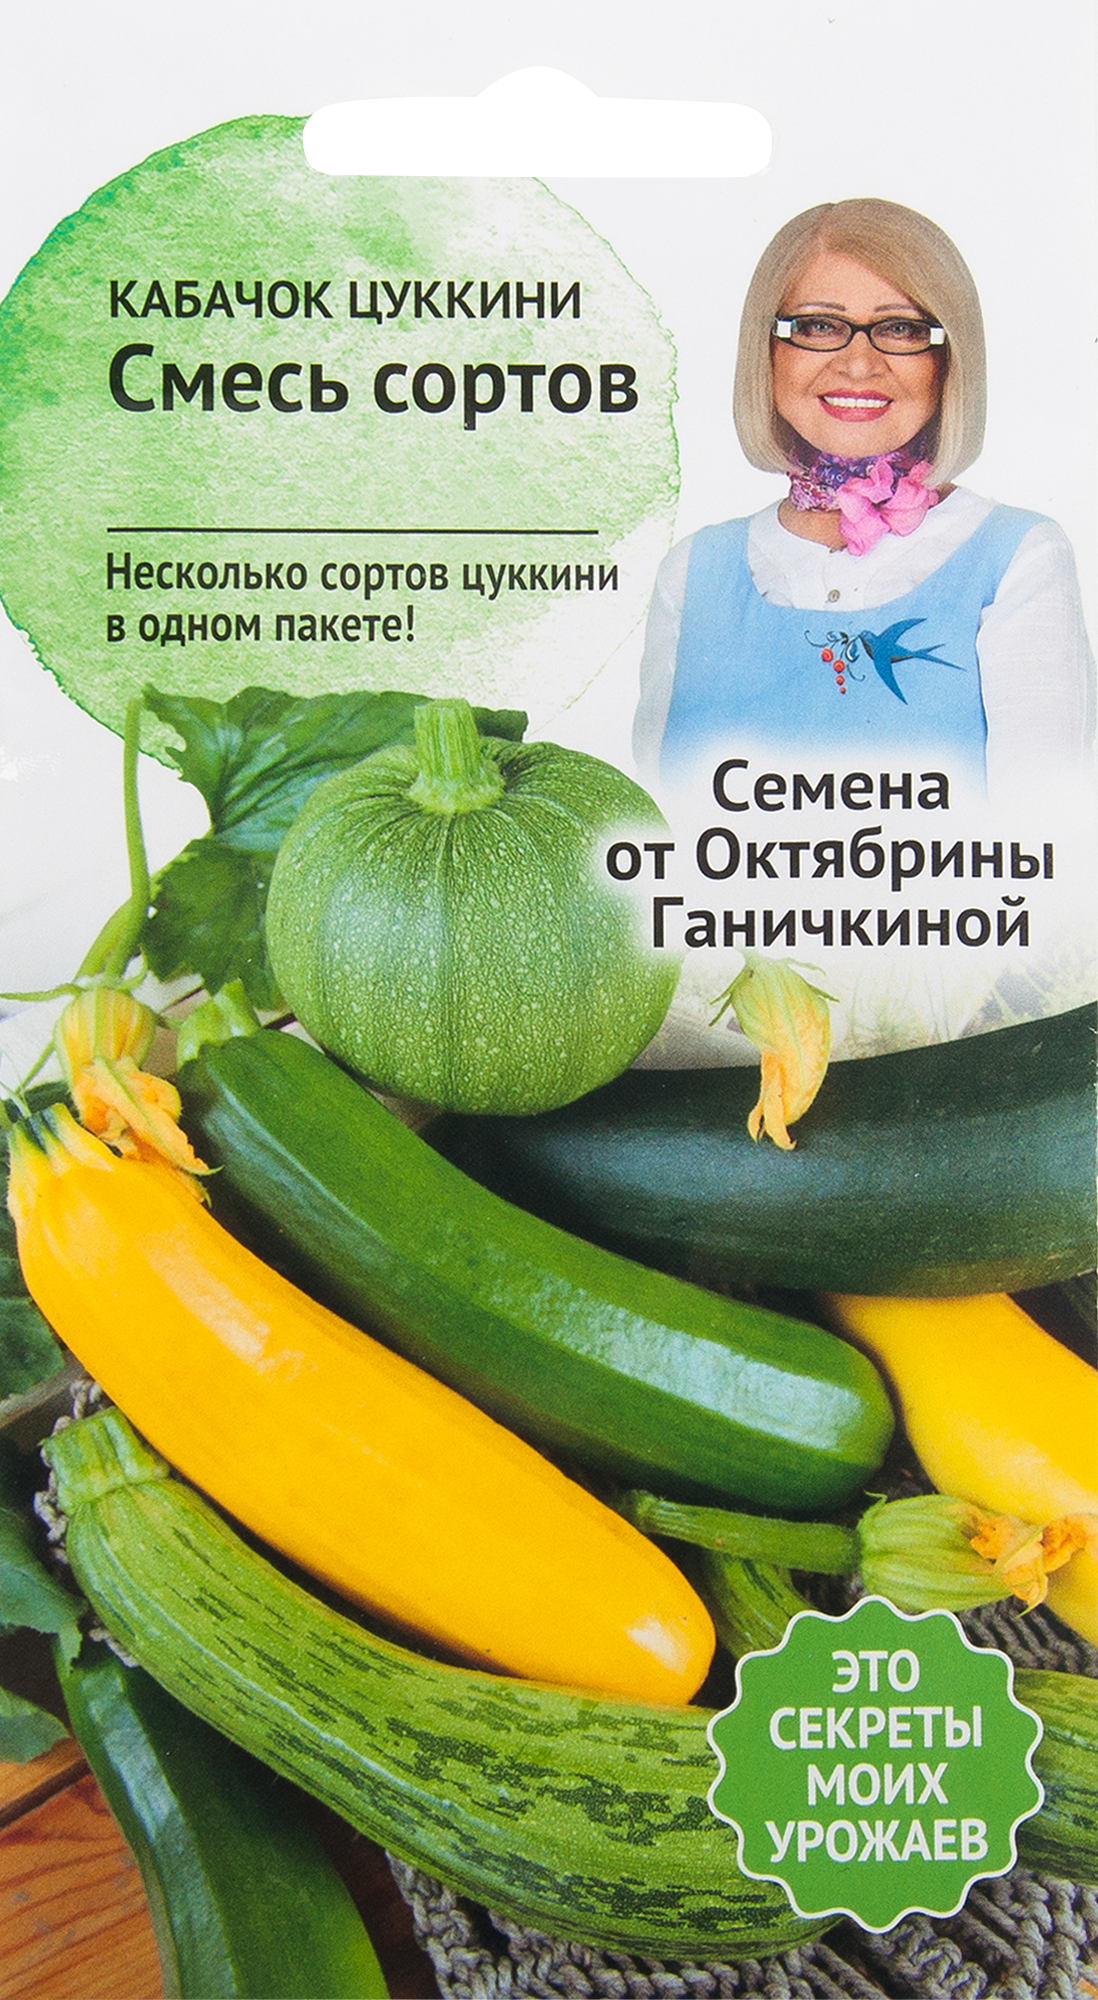 Семена Кабачок «Смесь цуккини» 2 г в Москве – купить по низкой цене винтернет-магазине Леруа Мерлен